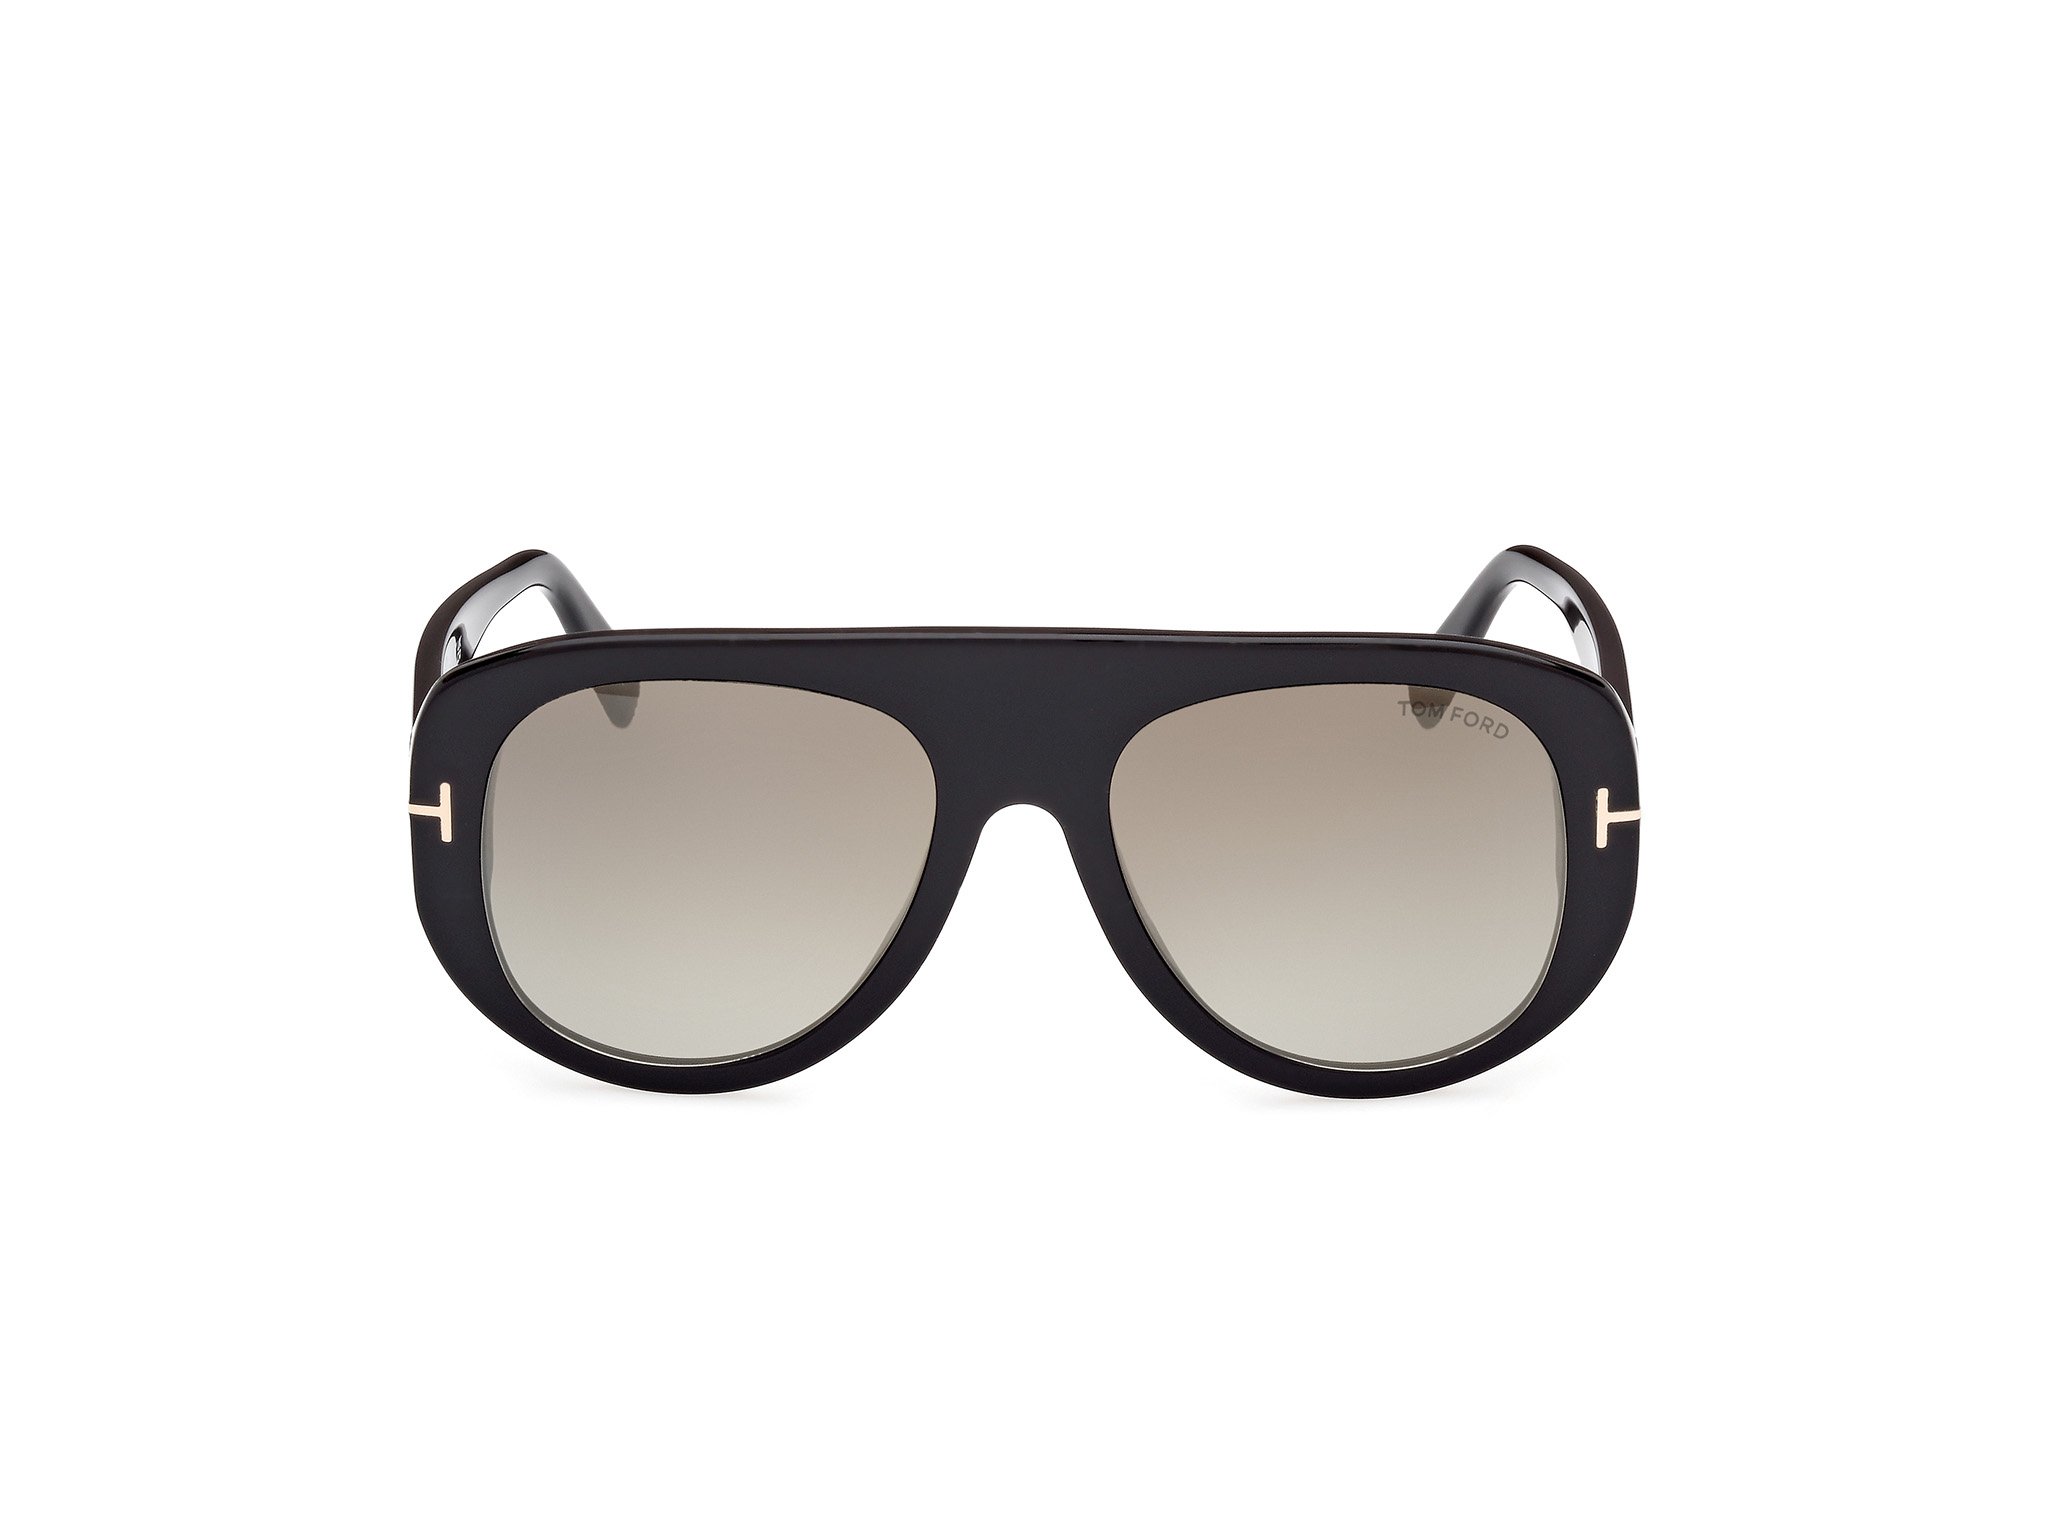  Tom Ford Sonnenbrille Cecil in schwarz FT1078 01G